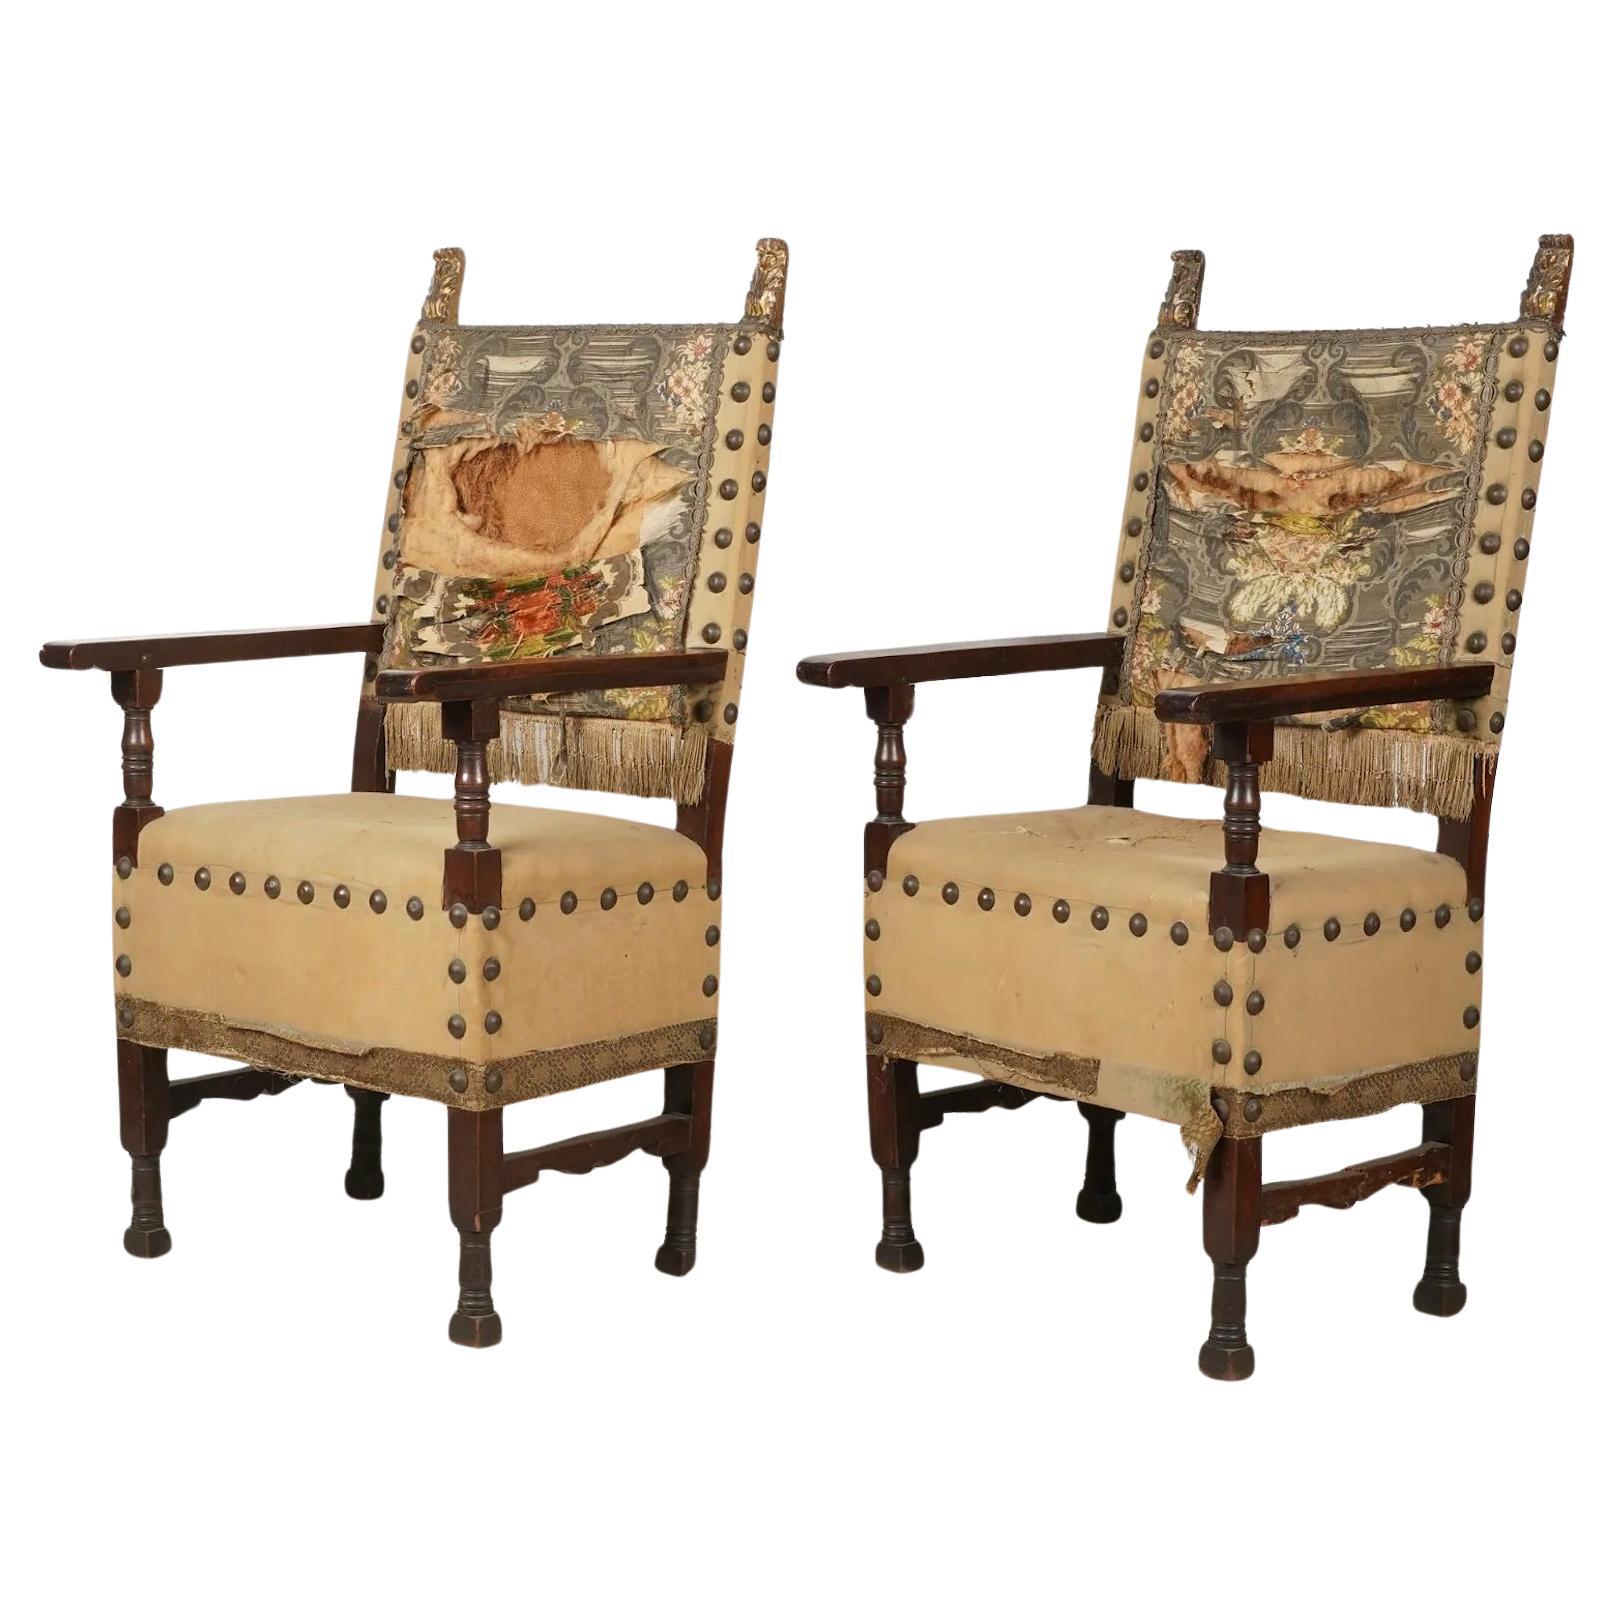 Antikes Paar spanische Barock-Hallenstühle aus Nussbaumholz im Kolonialstil im Kolonialstil, 18. Jahrhundert 